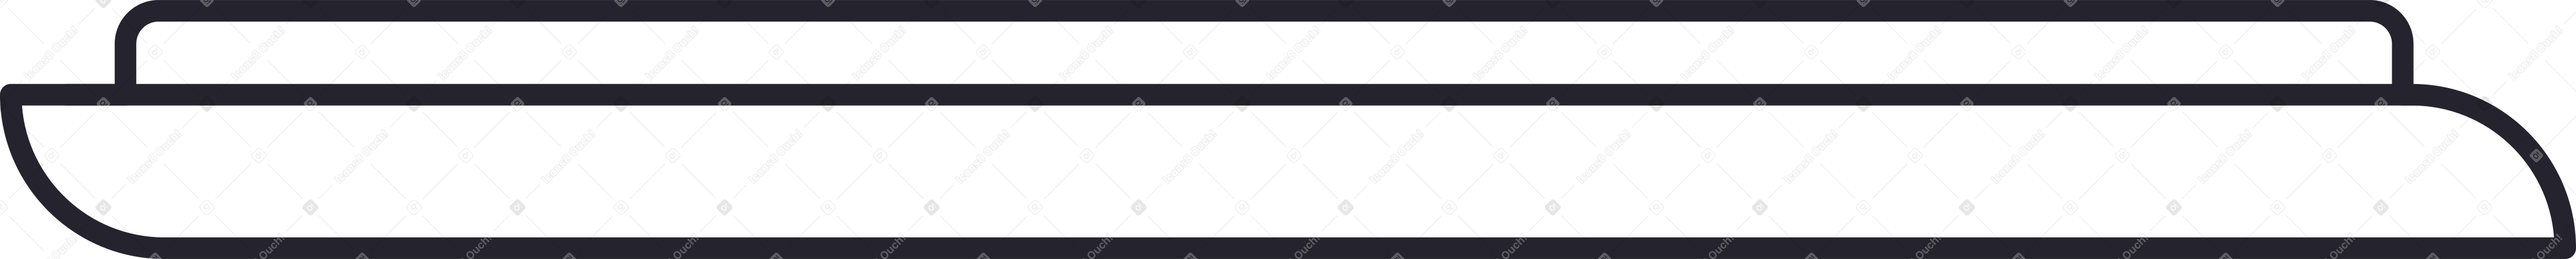 white keyboard Illustration in PNG, SVG